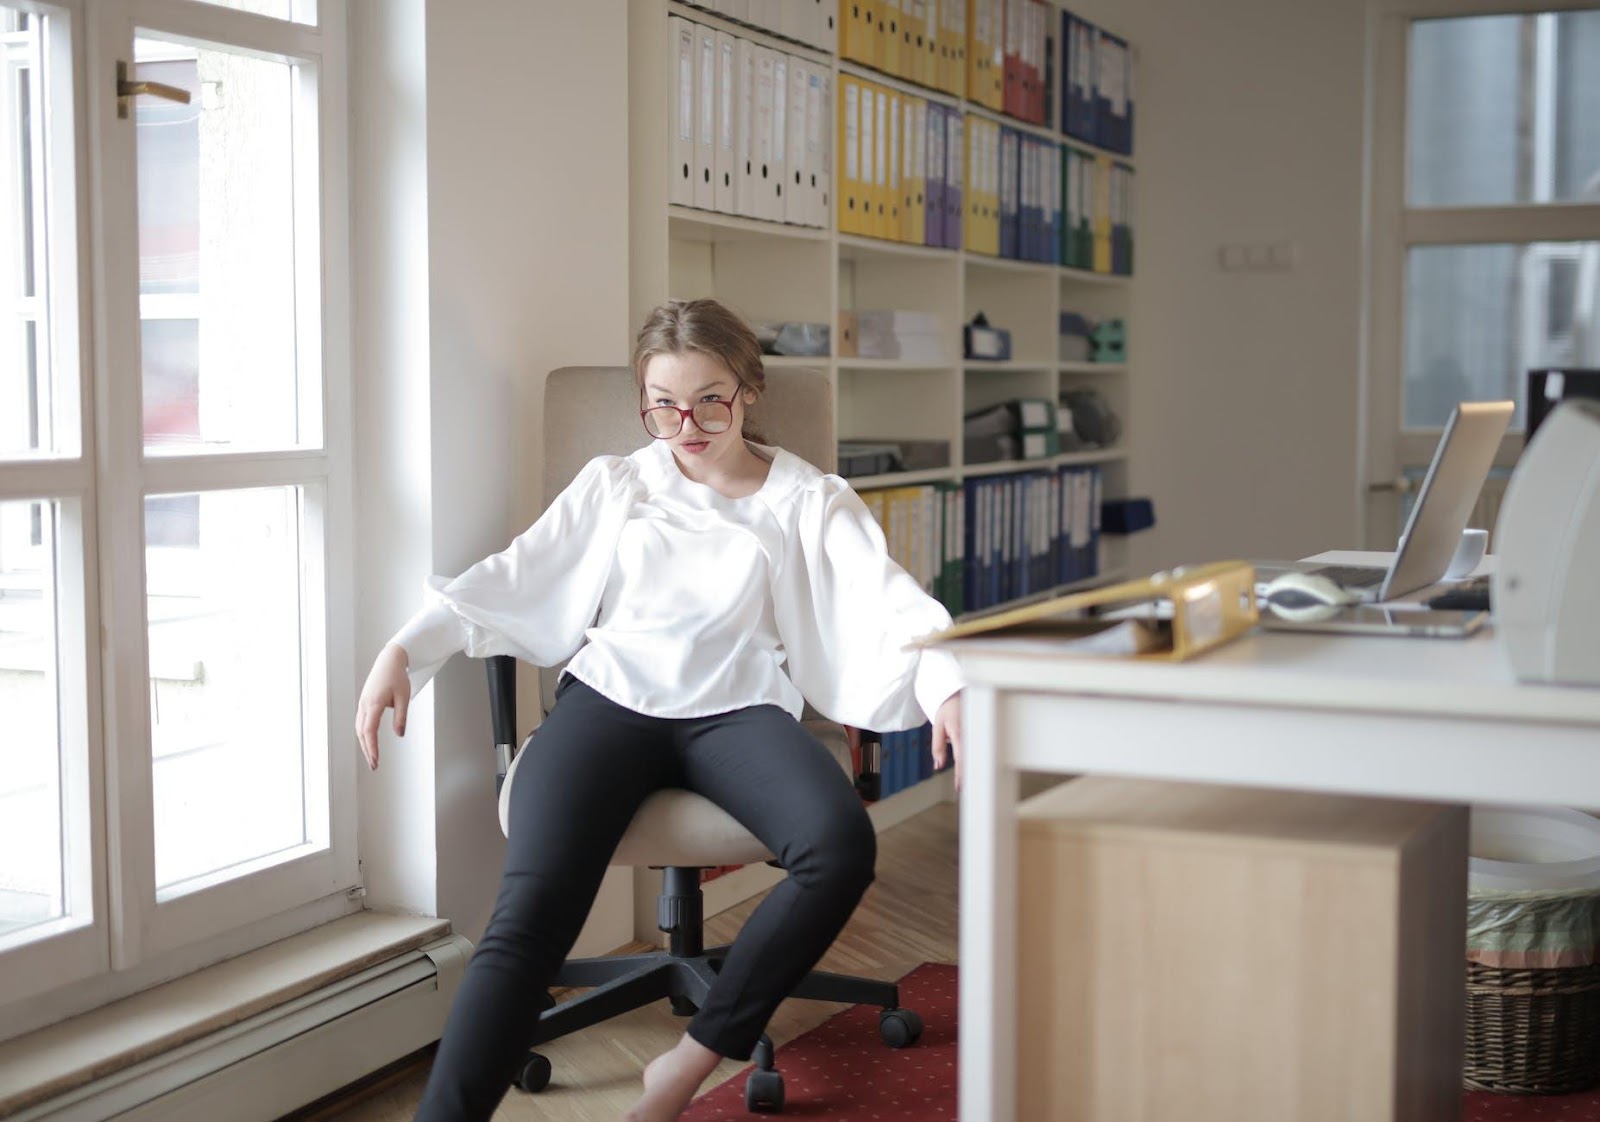 Bossy female employee in formal wear sitting on chair in workplace demonstrating frivolous behavior